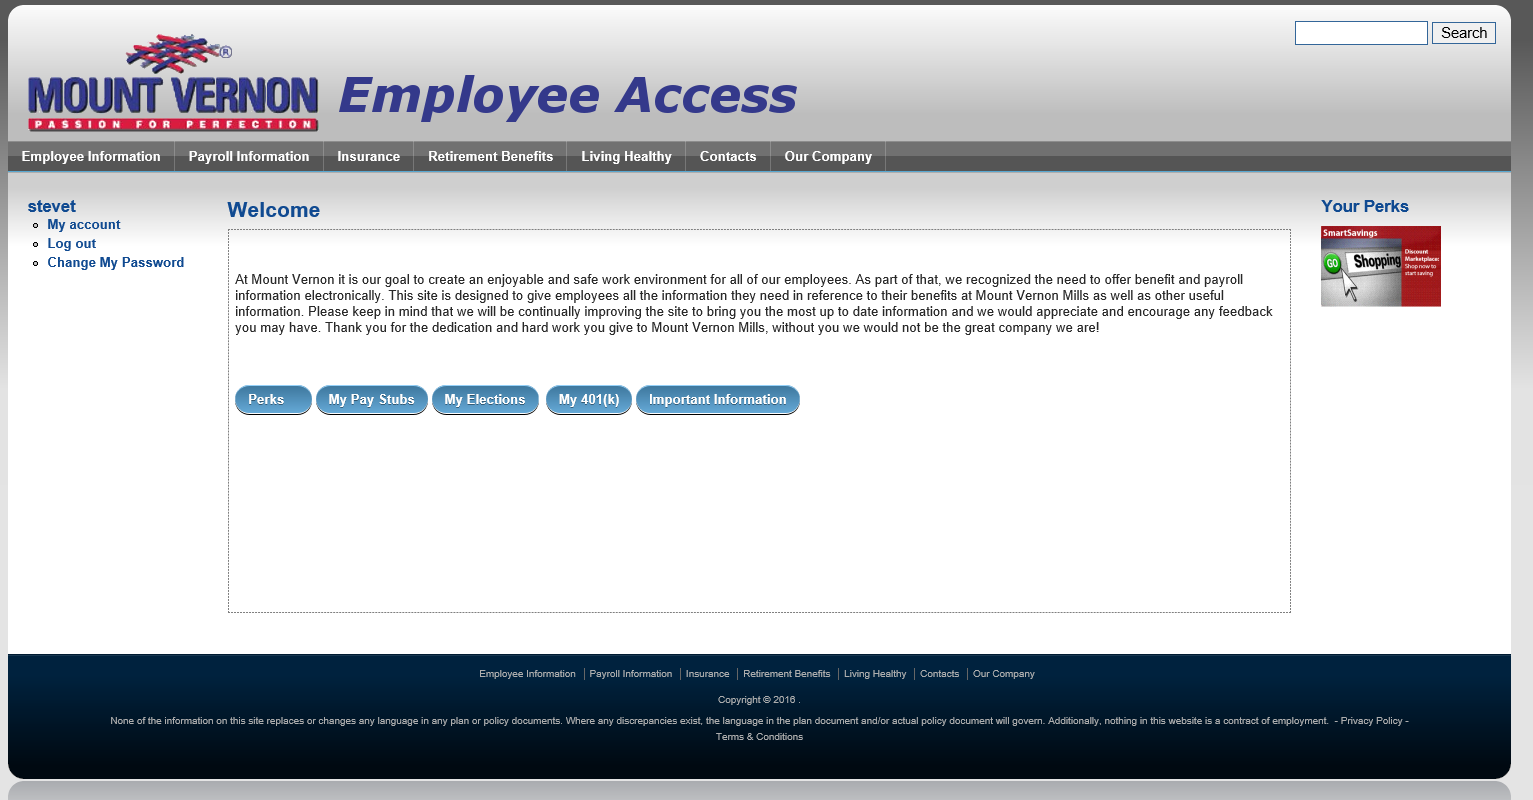 Mount Vernon Employee Access